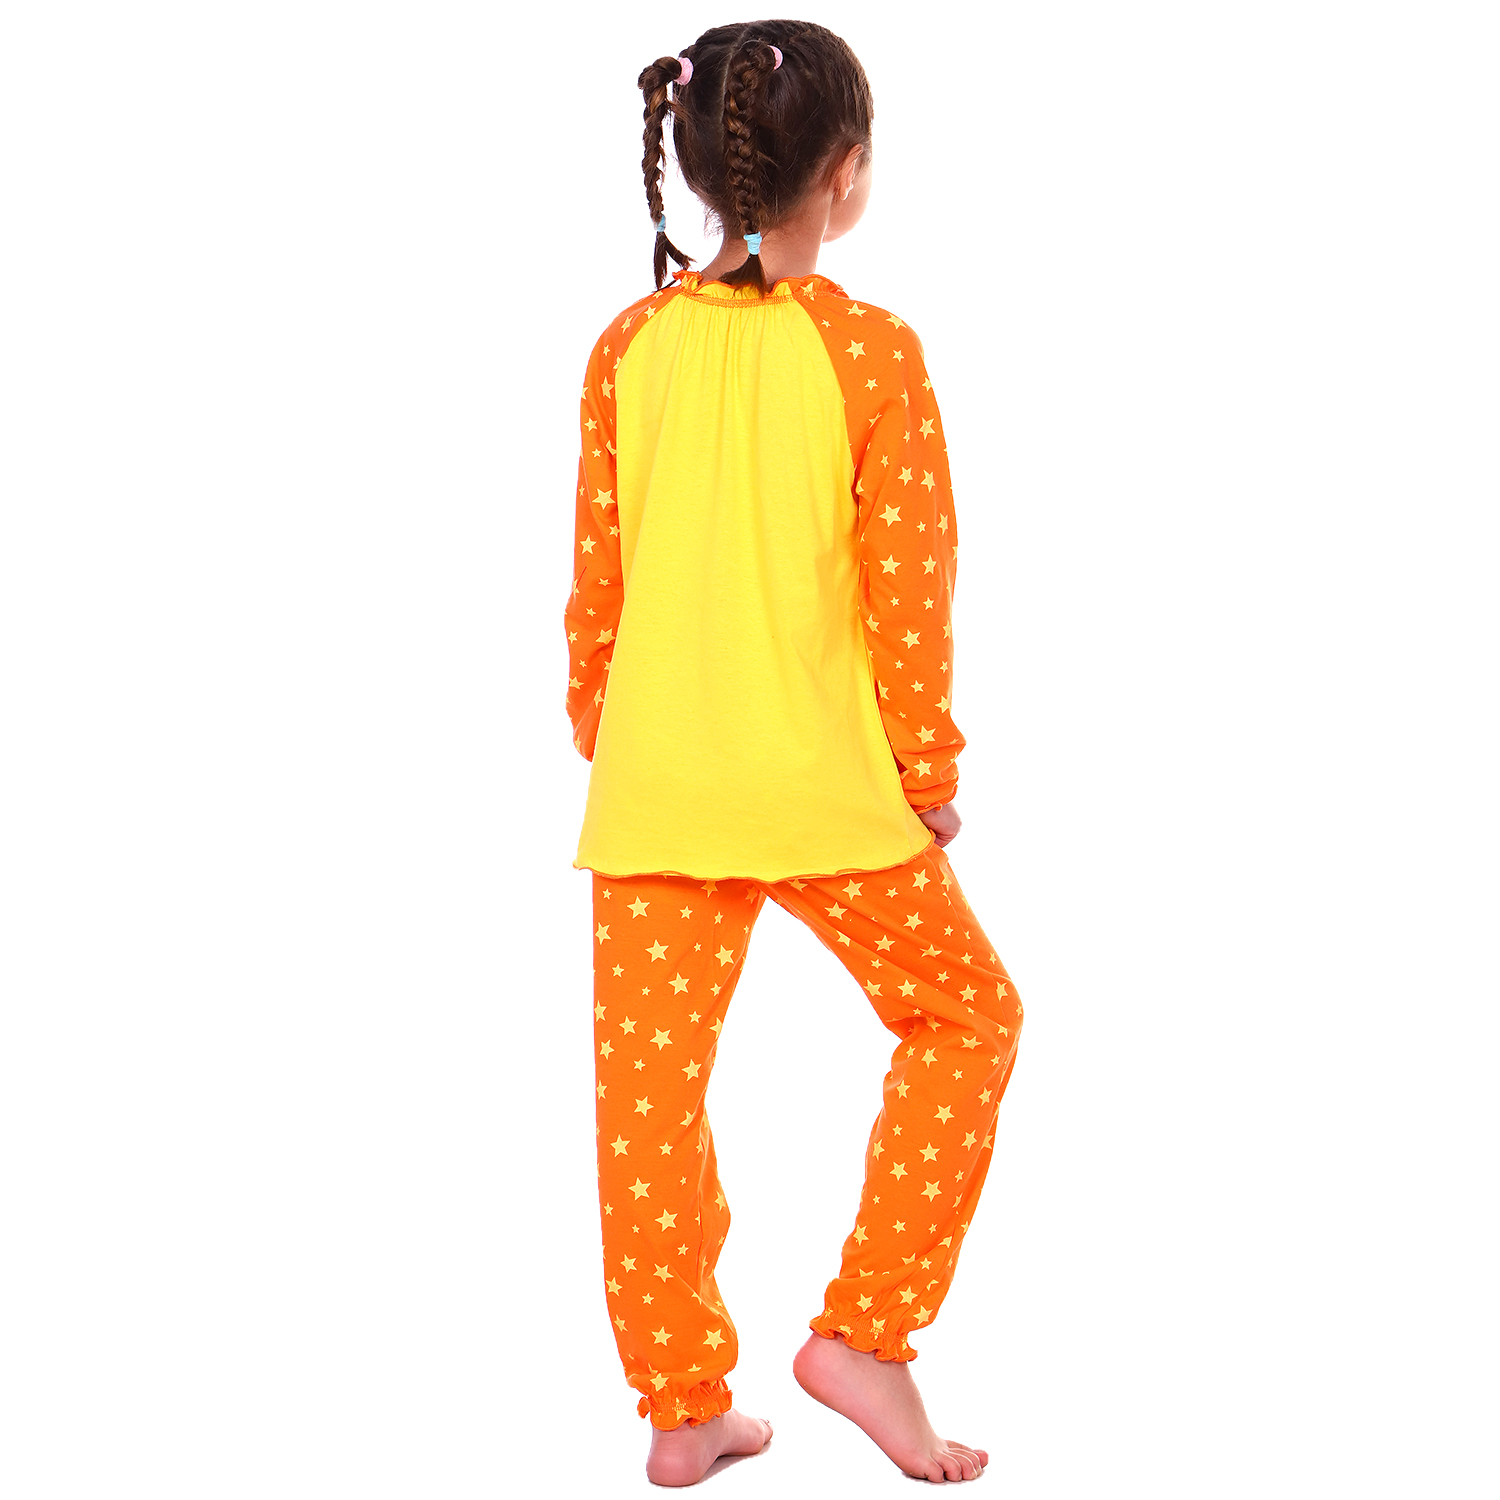 Пижама Детская Одежда S0413К/желтый_оранж - фото 6